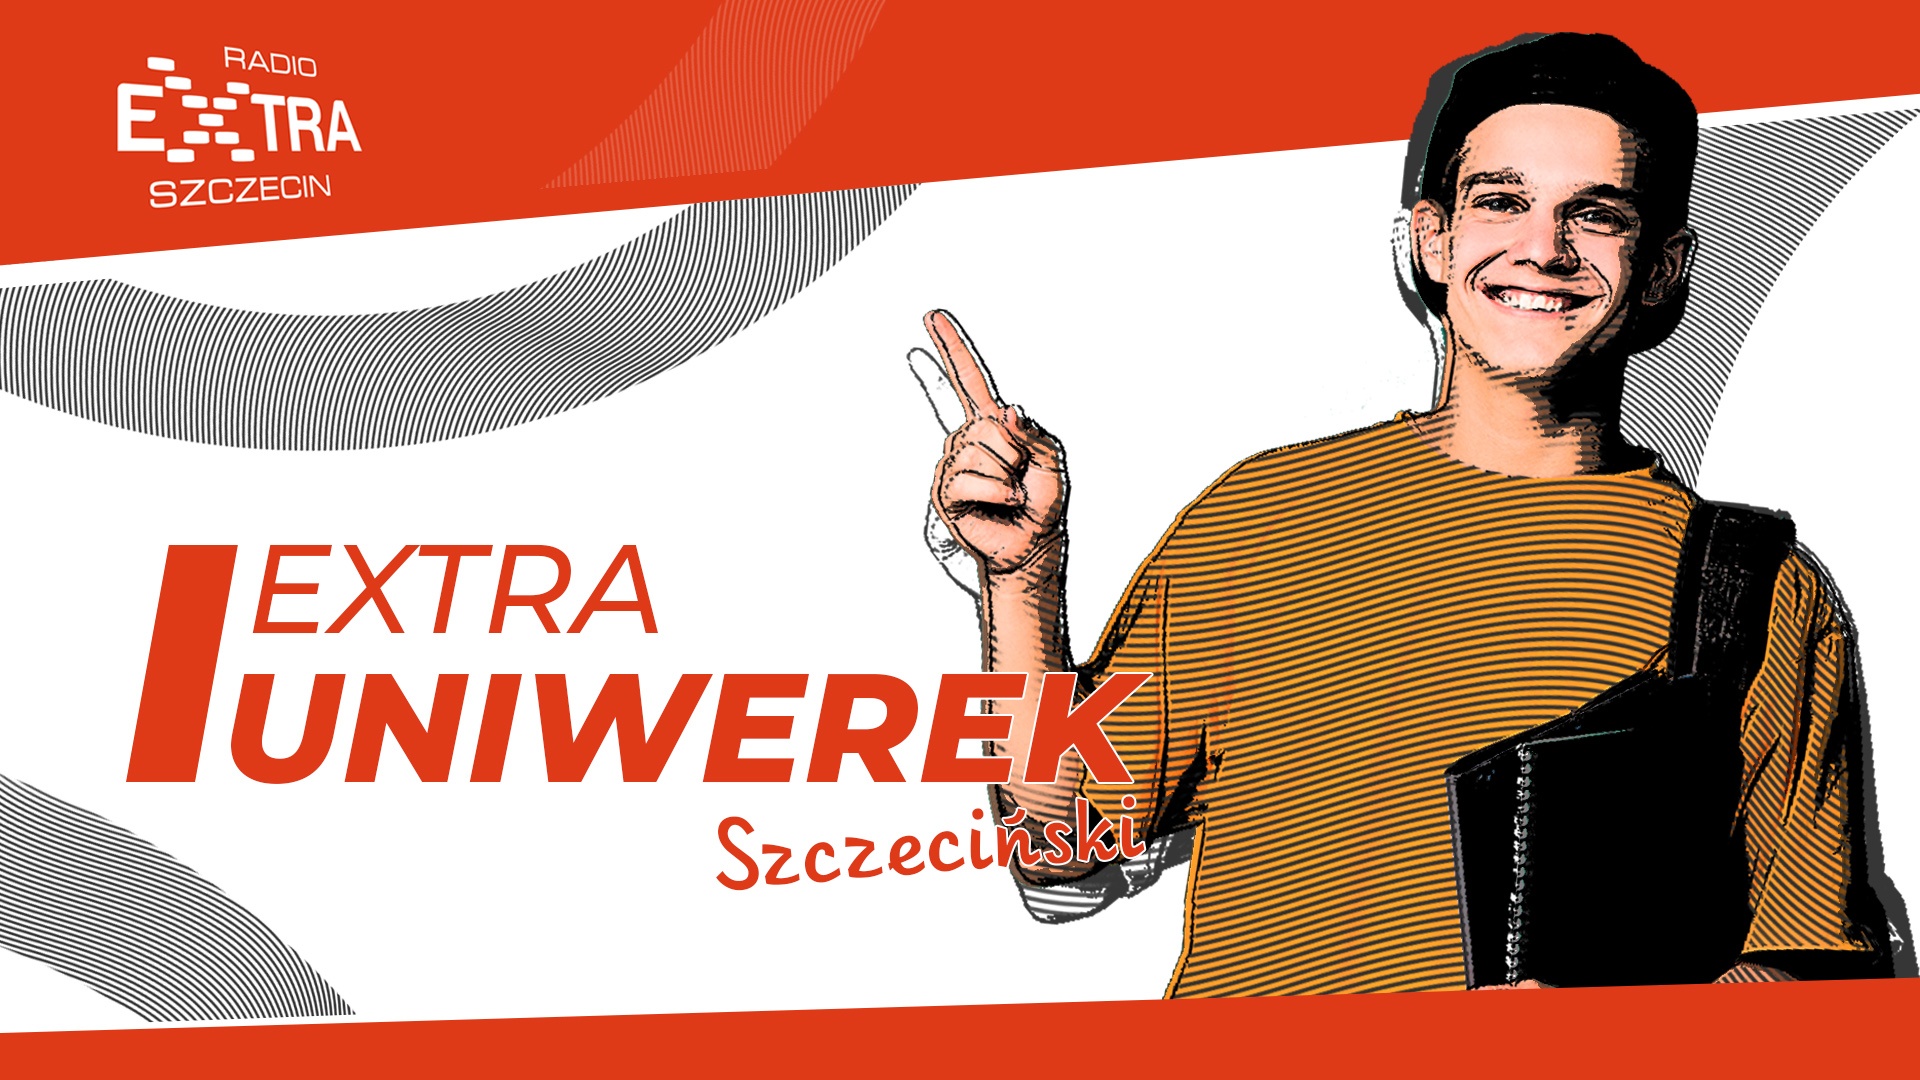 Extra Uniwerek Szczeciński